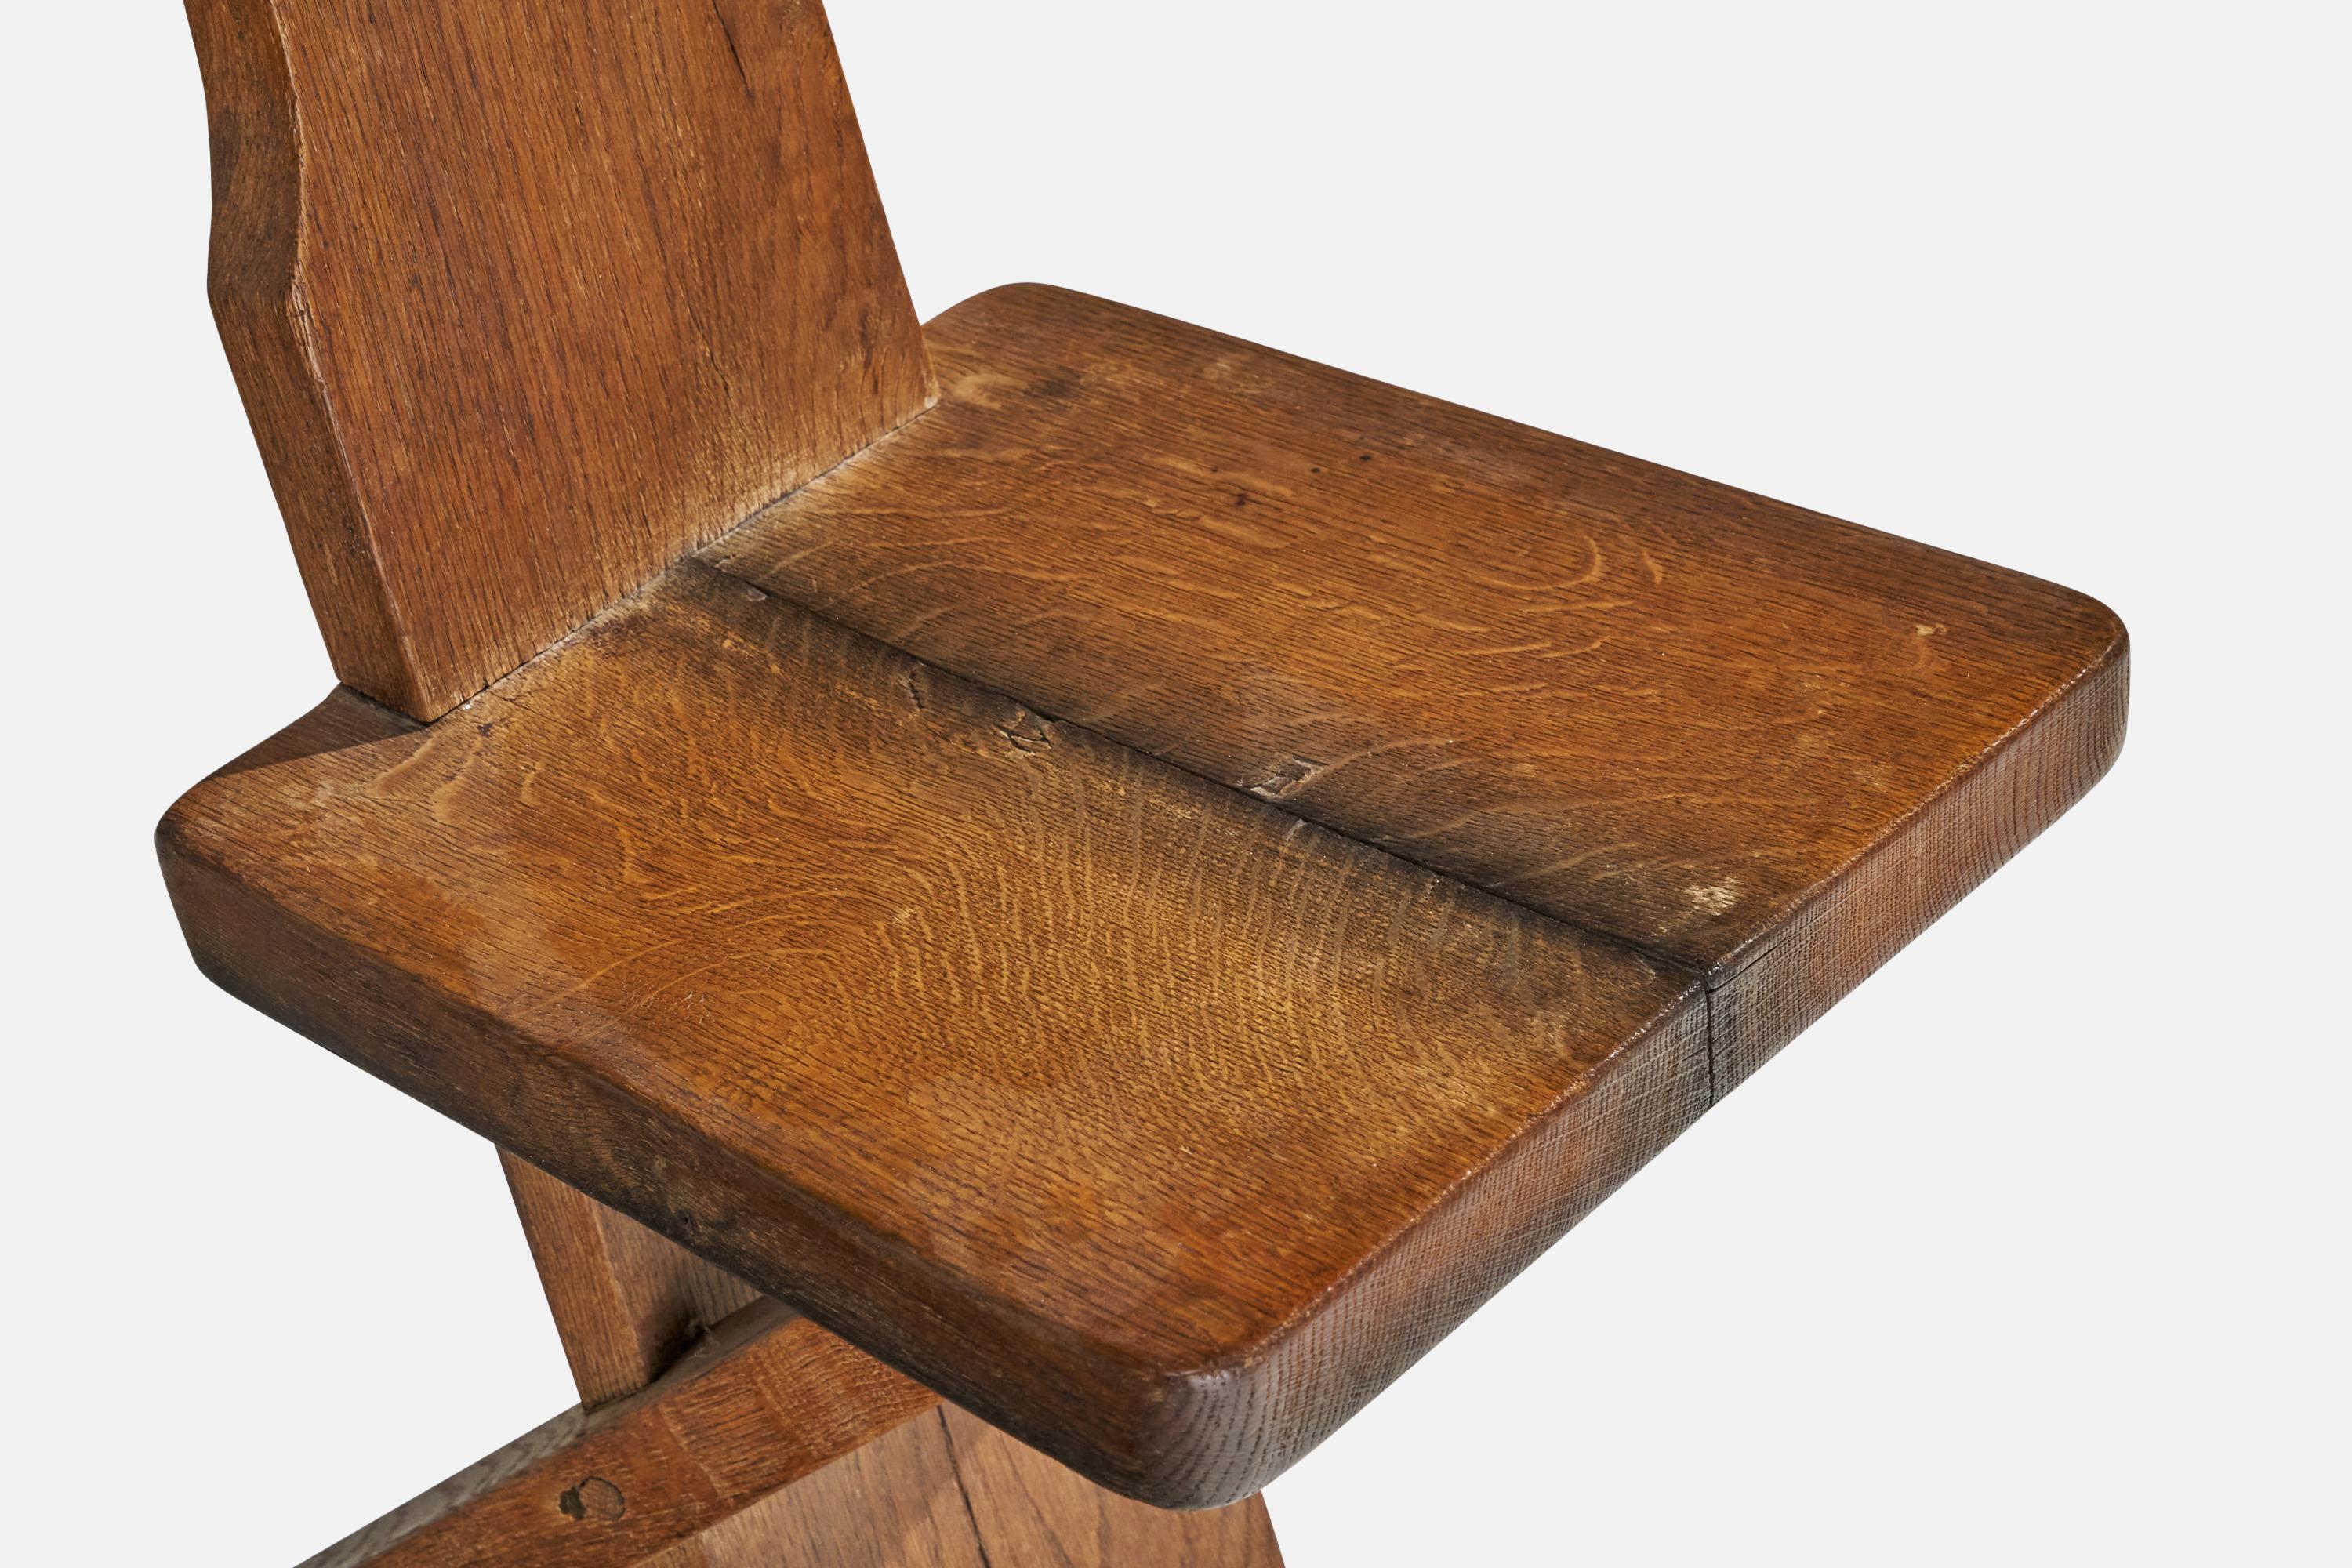 Danish Designer, Side Chairs, Oak, Denmark, 1920s For Sale 2